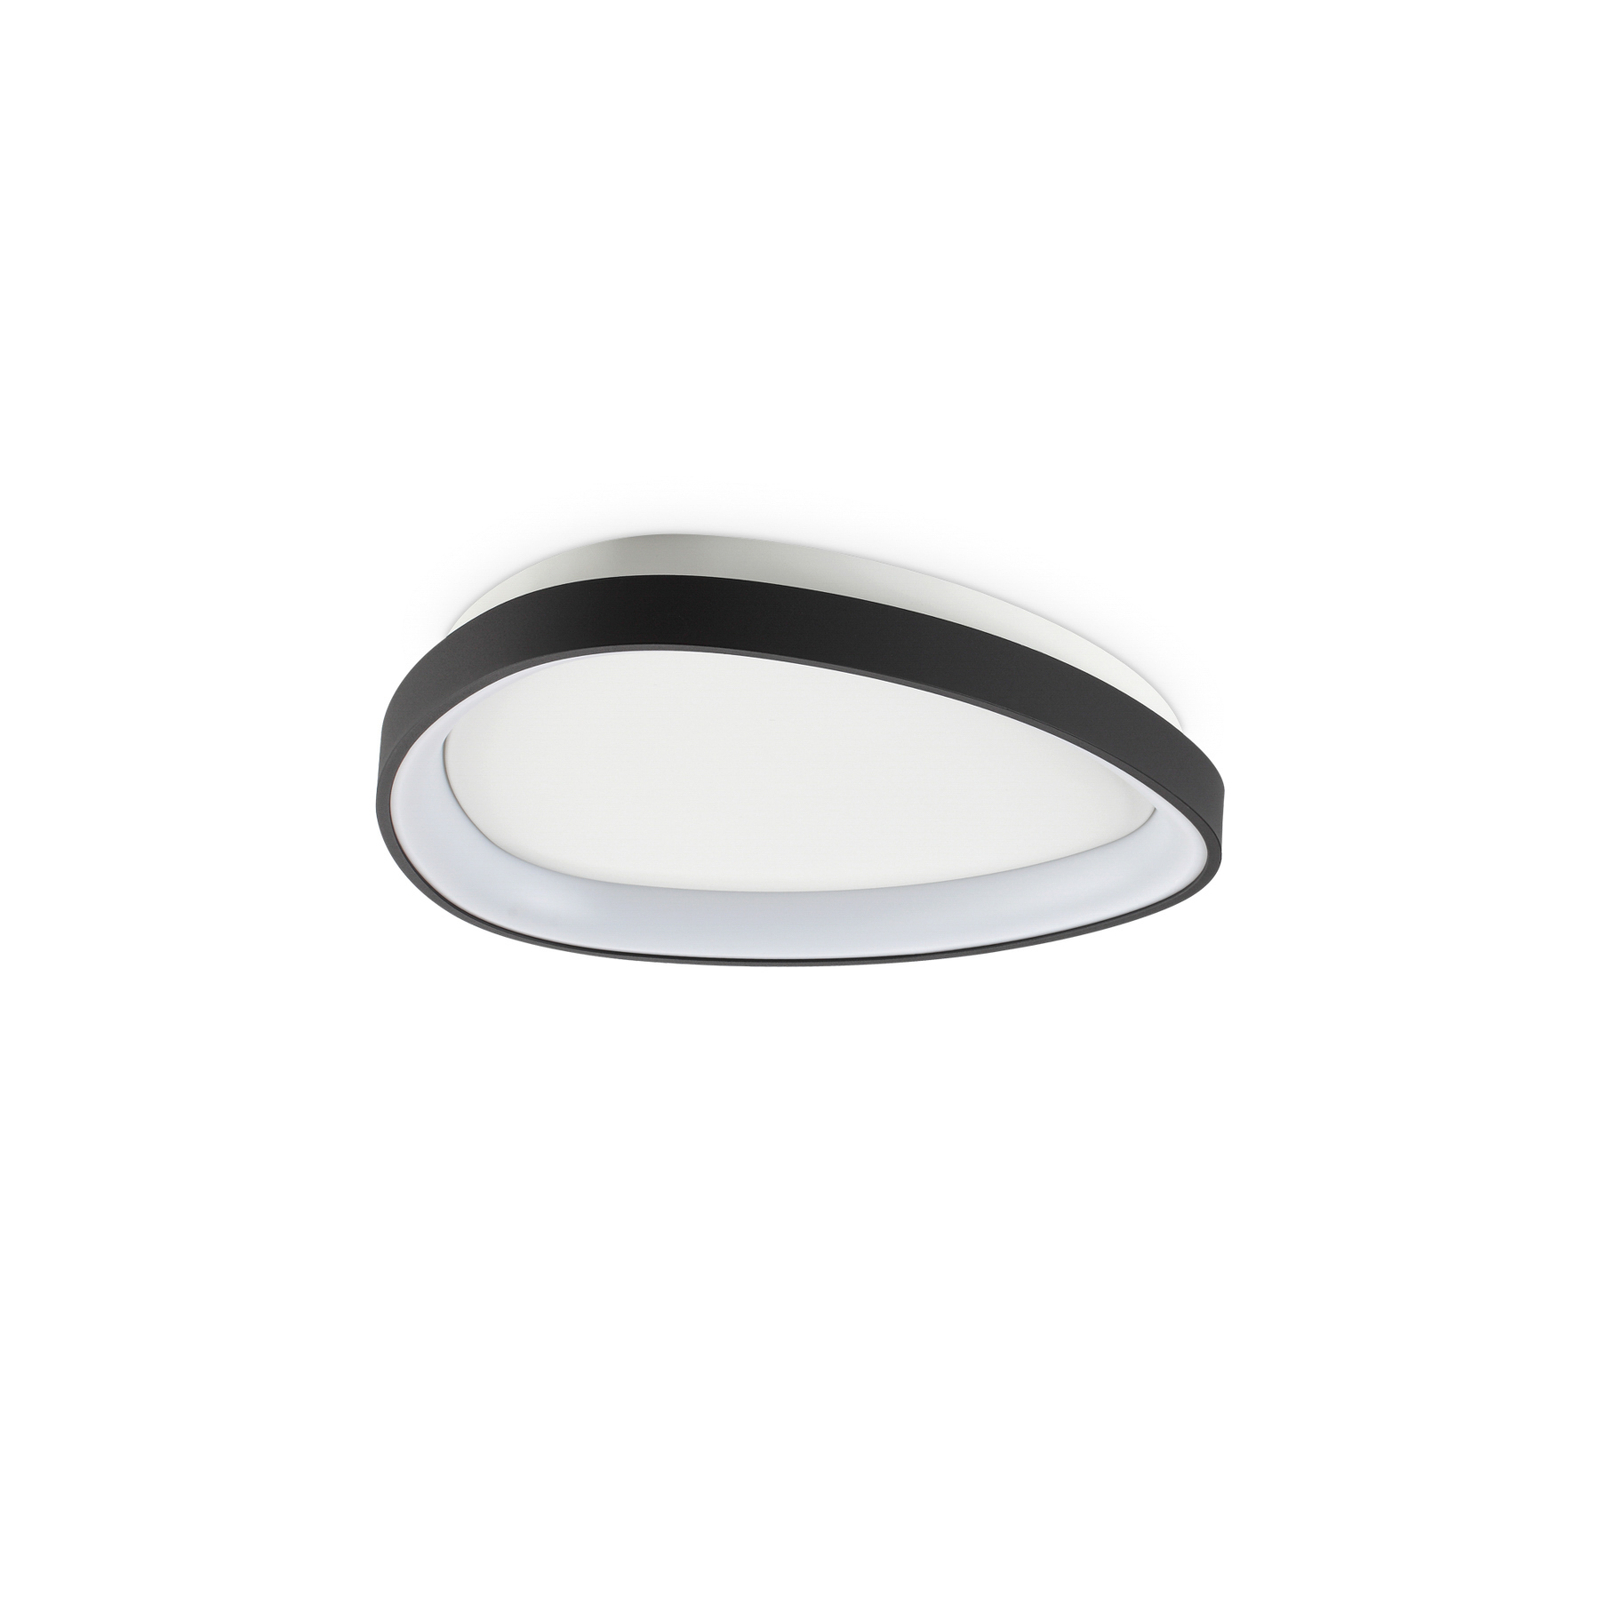 Ideal Lux Gemini LED stropna svetilka, črna, 42,5 cm, vklop/izklop